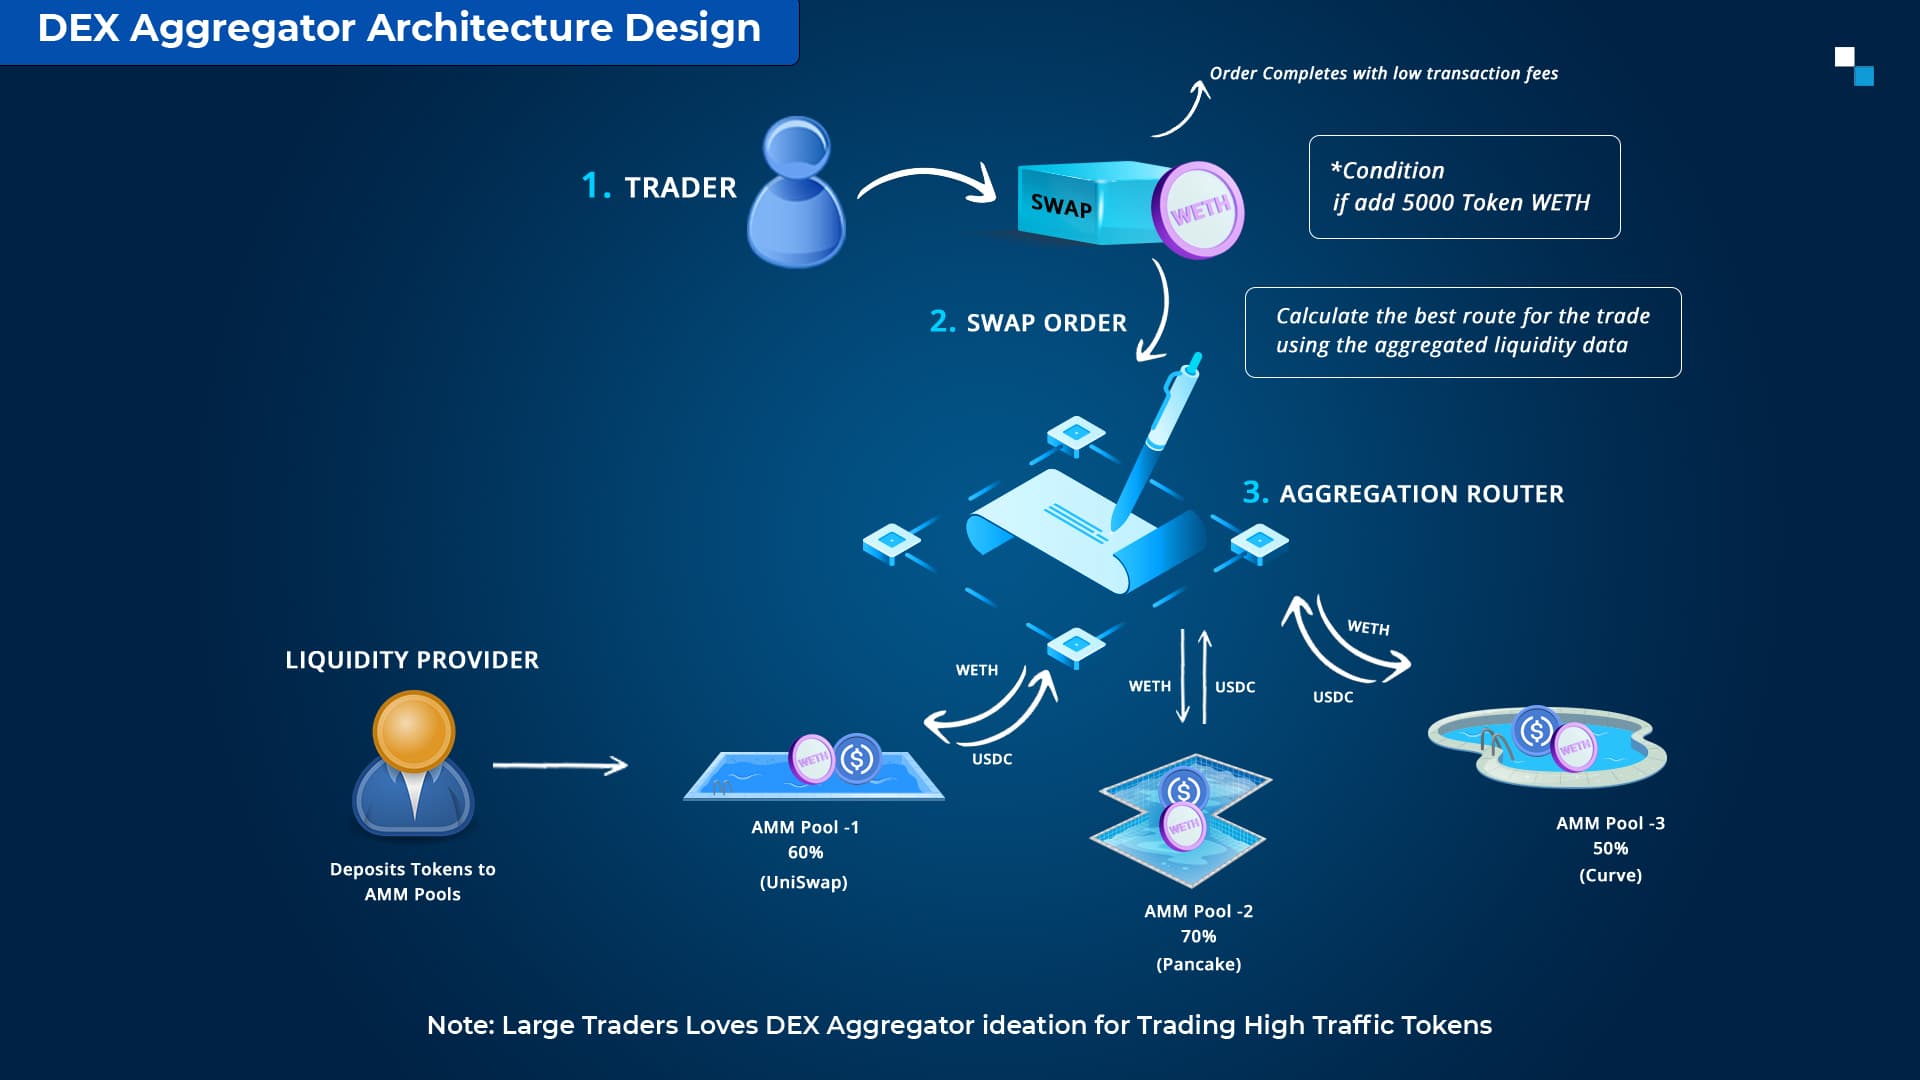 DEX Aggregator's architectural design